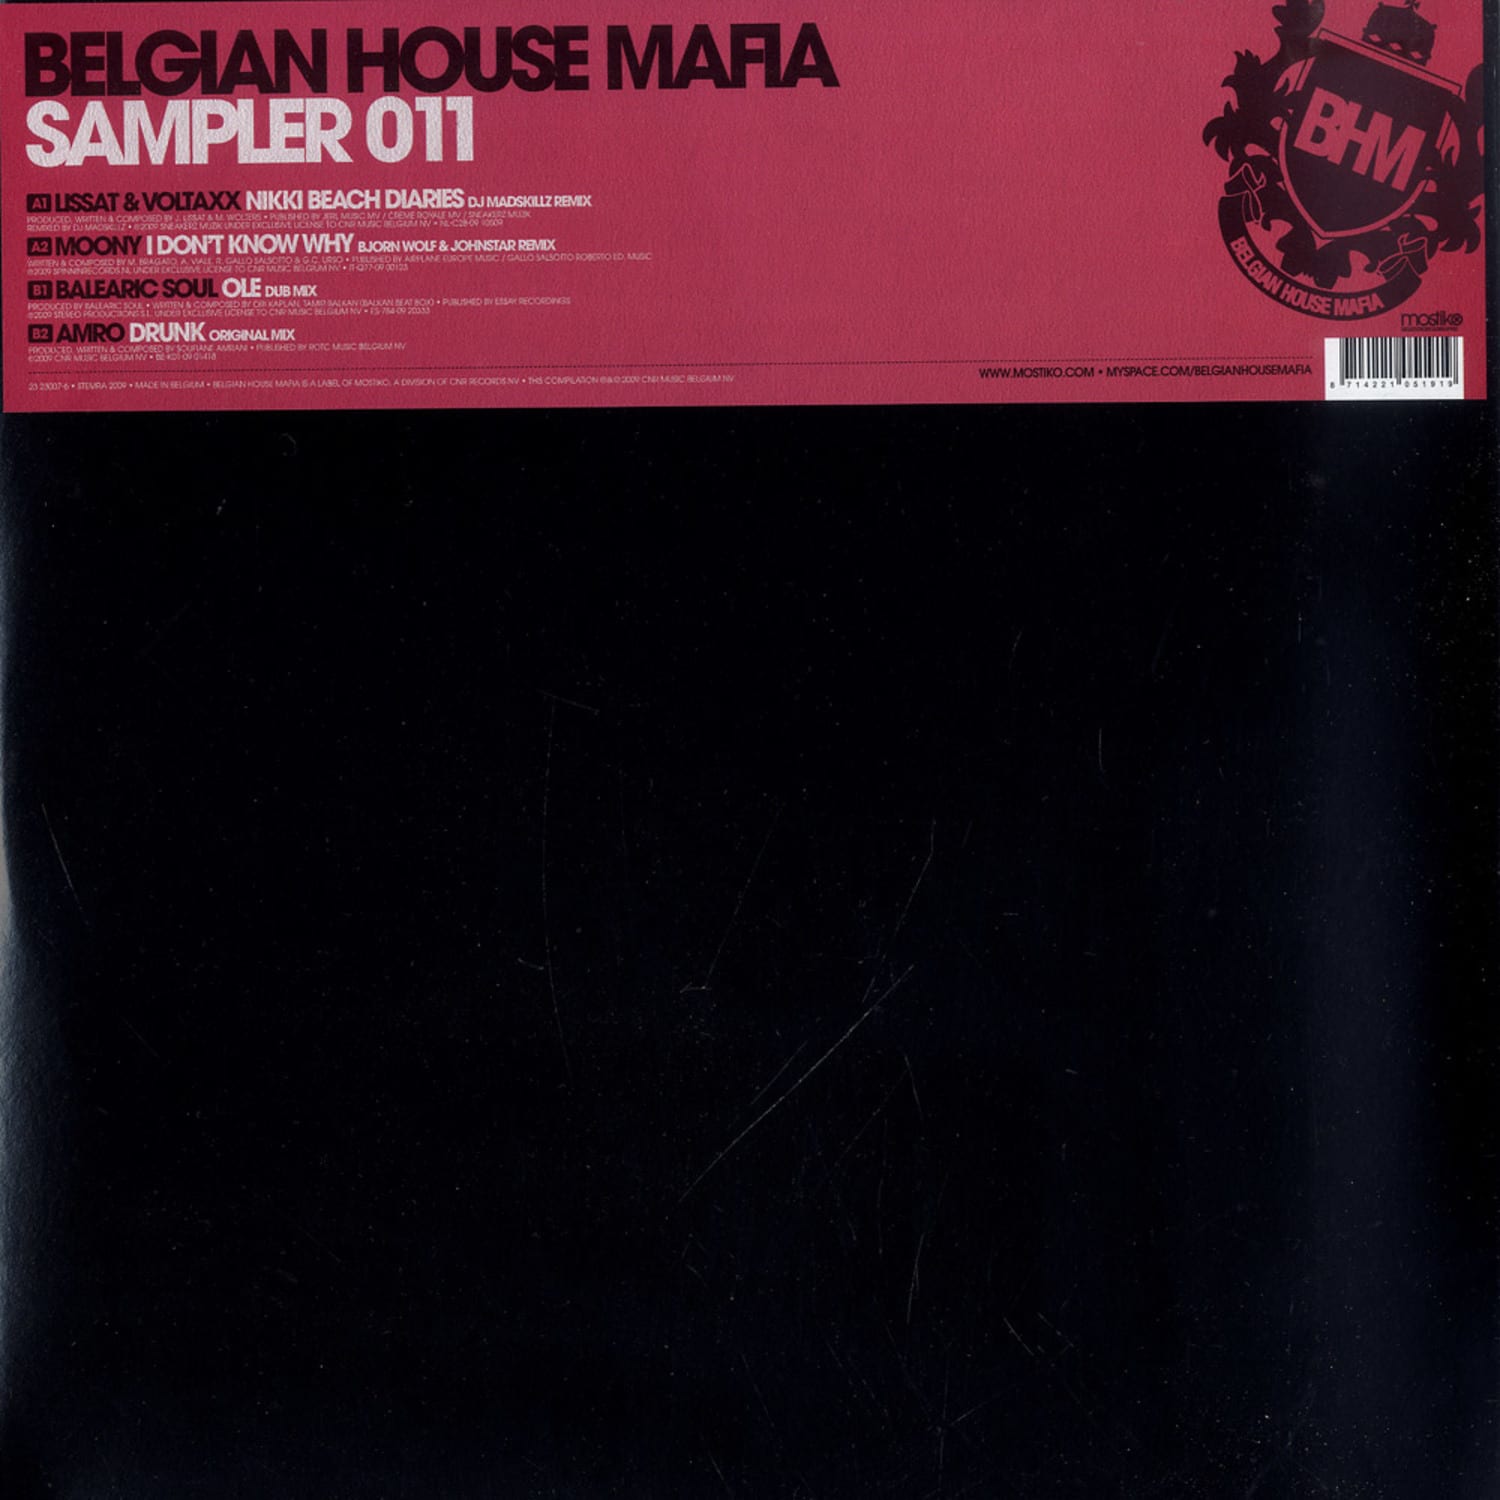 Various Artist - BELGIAN HOUSE MAFIA SAMPLER 011